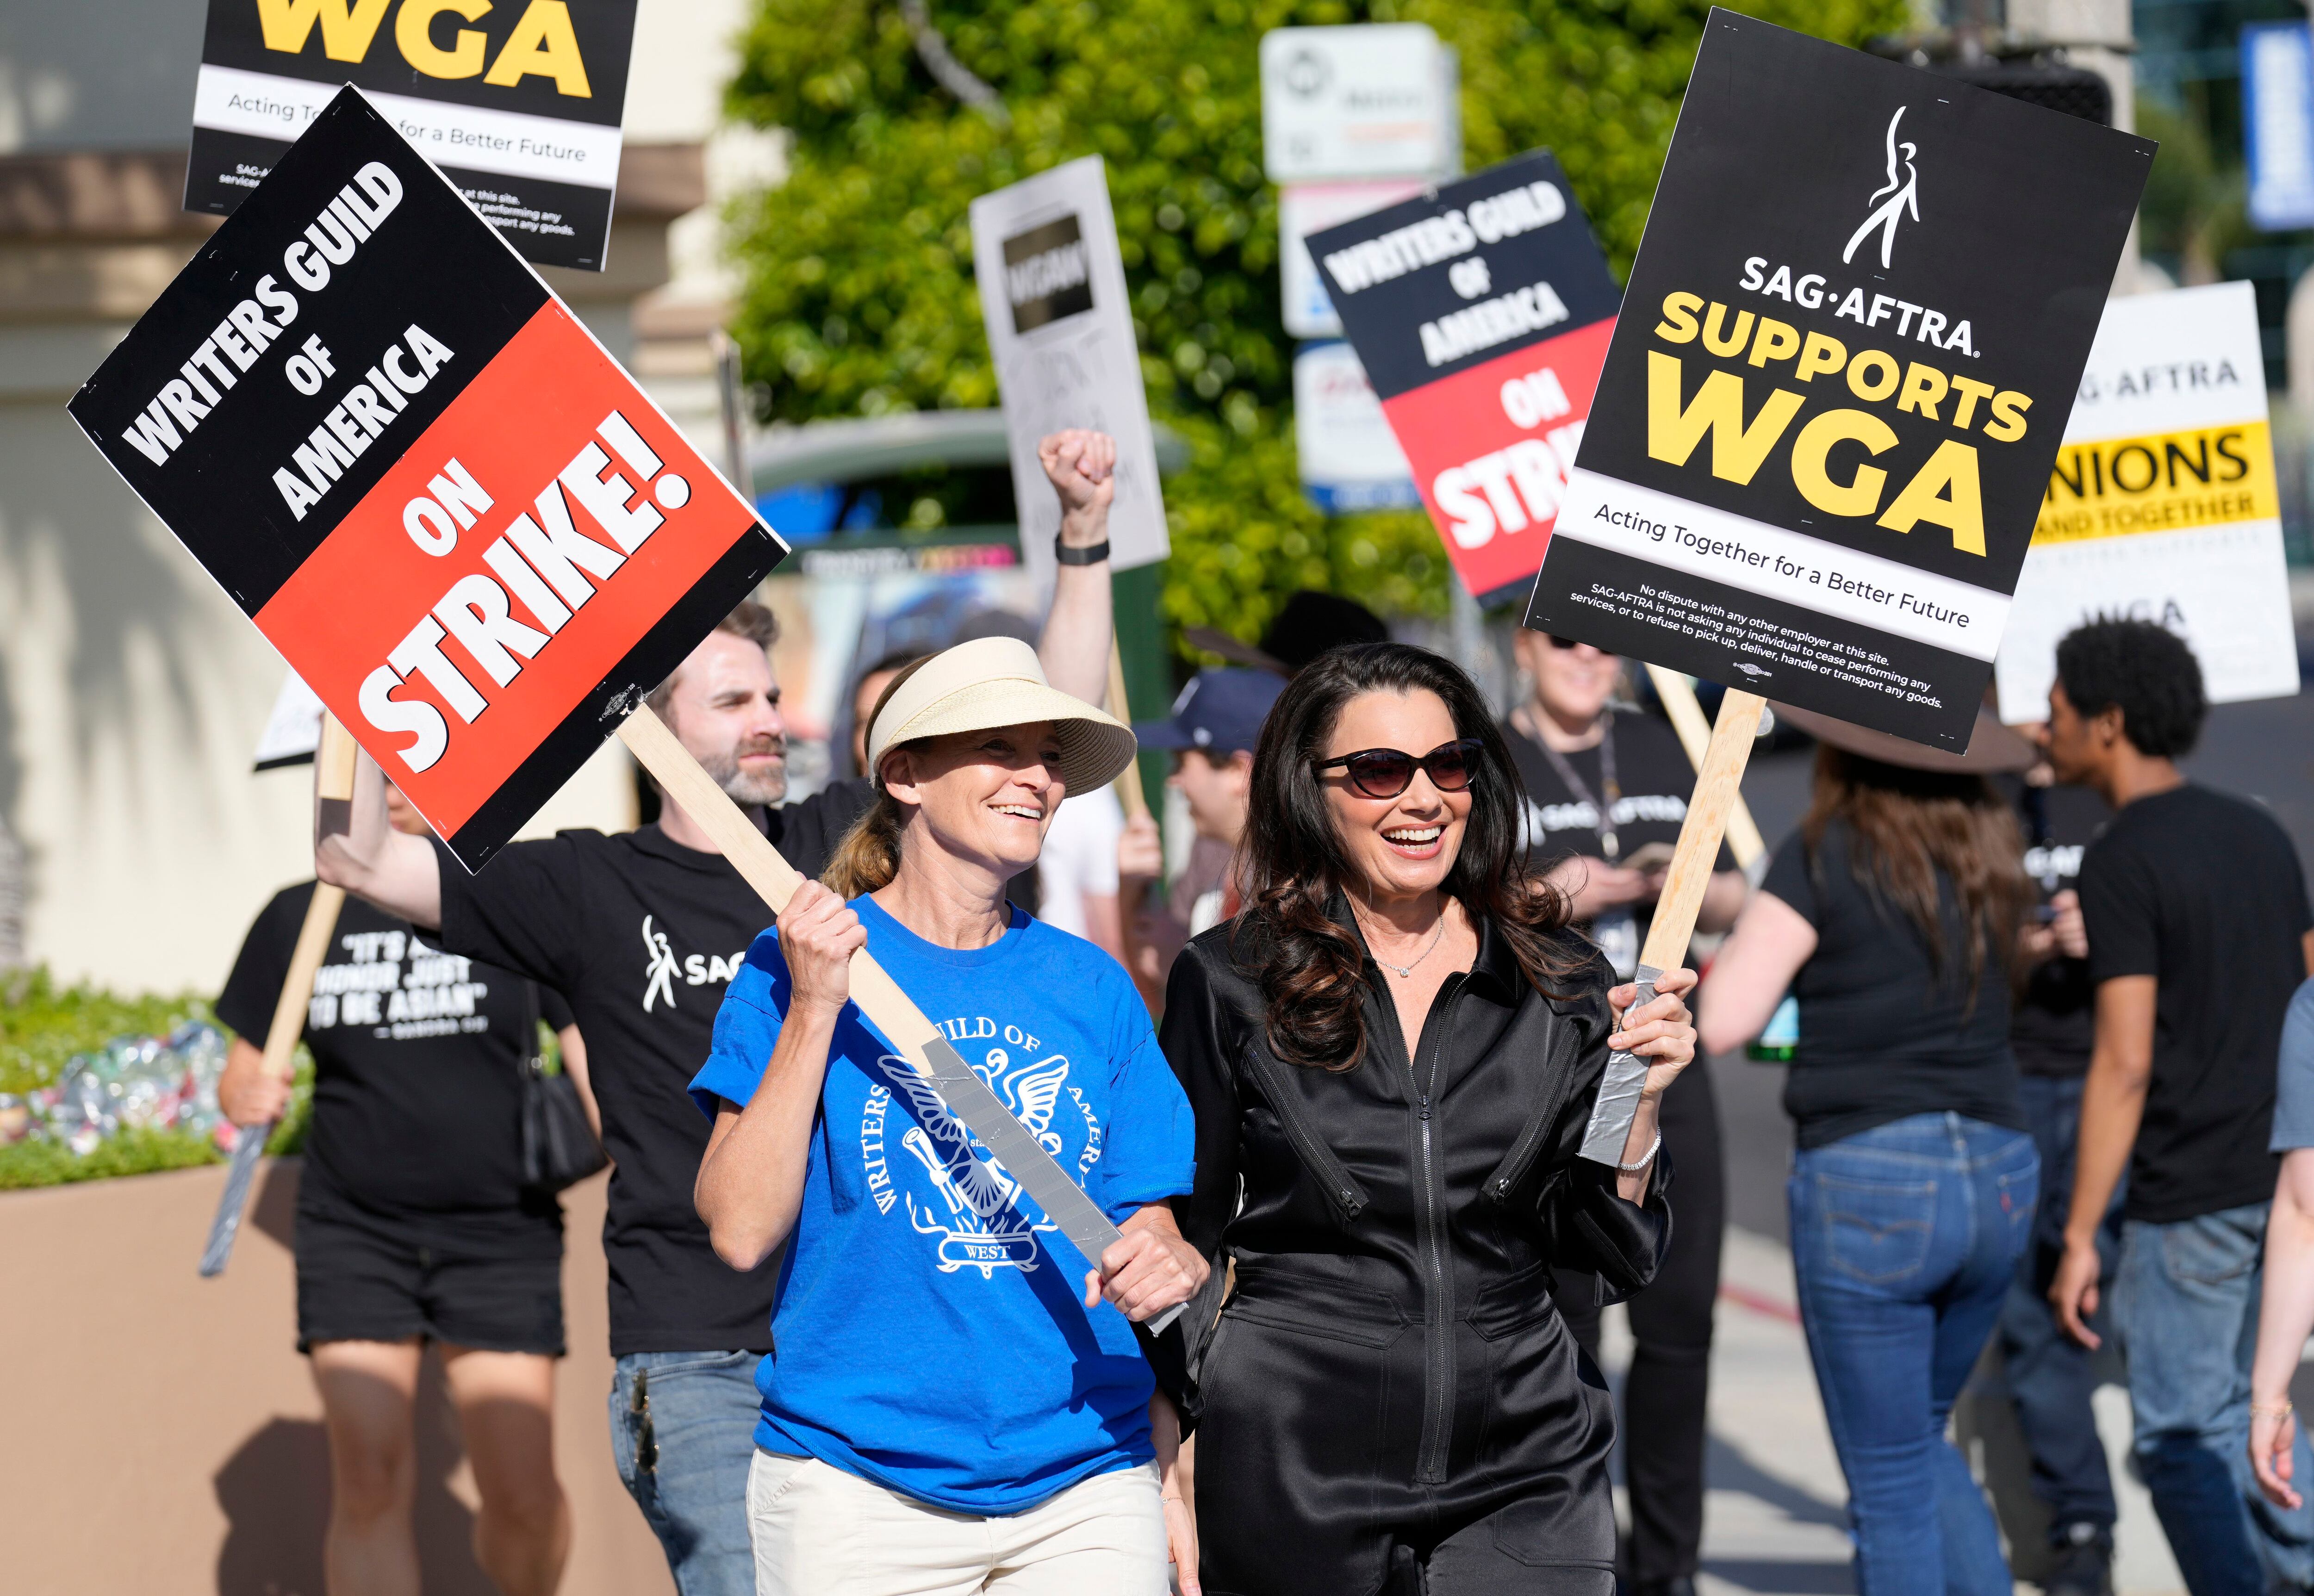 Meredith Stiehm, presidenta del WGA, el sindicato de guionistas, protesta en los estudios de Paramount acompañada de Fran Drescher, presidenta de SAG-AFTRA, el sindicato de actores, el 8 de mayo.